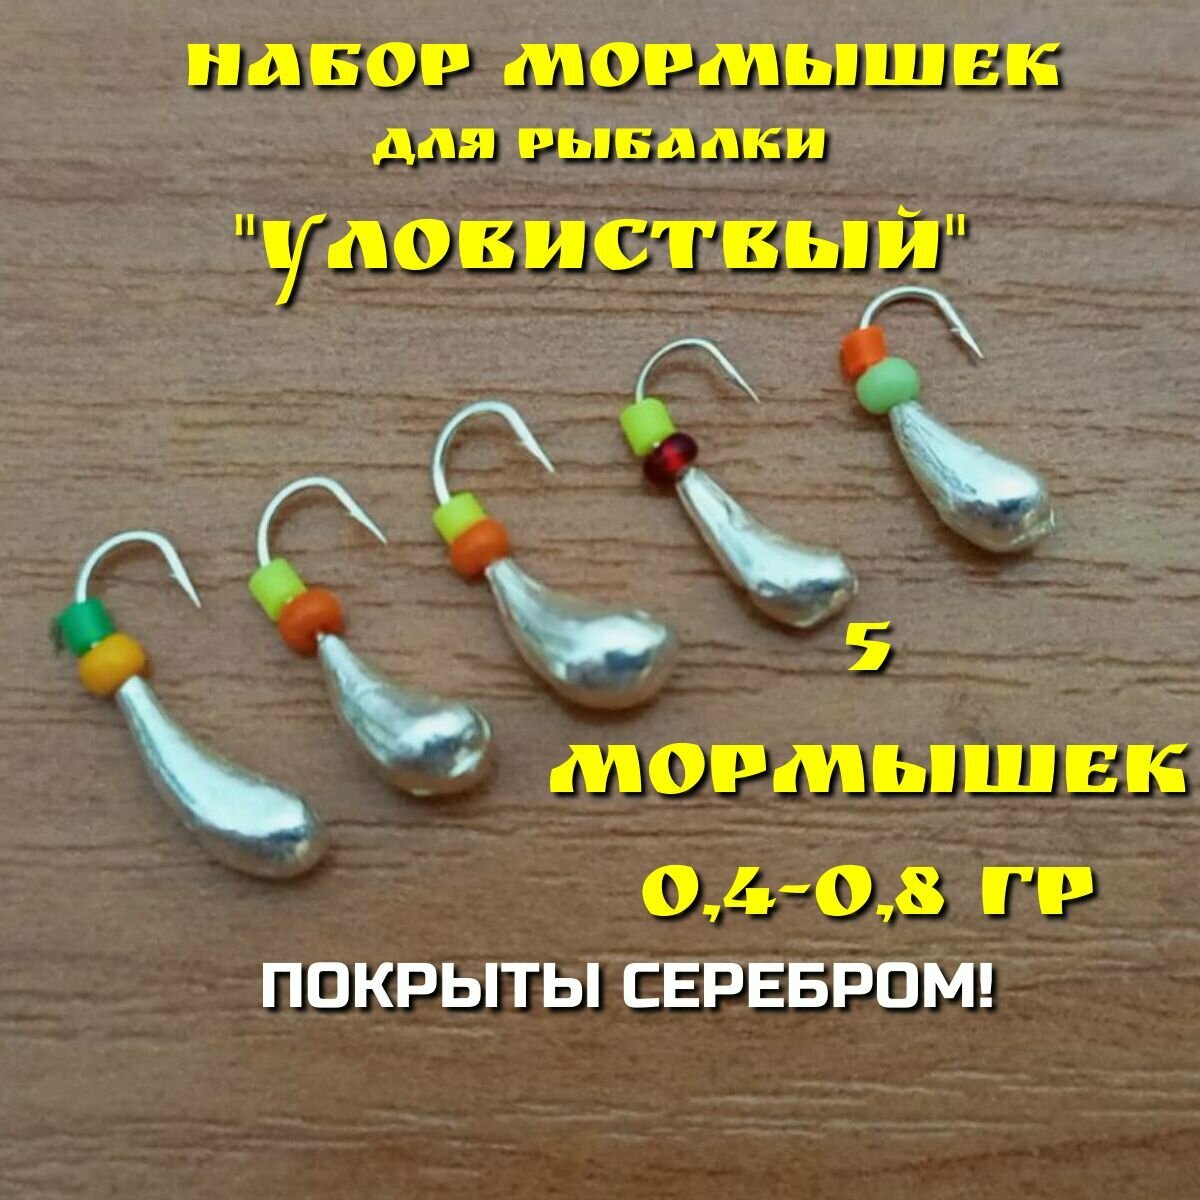 Мормышки для зимней и летней рыбалки, набор 5 штук, покрытые серебром, 0,4-0,80 грамм